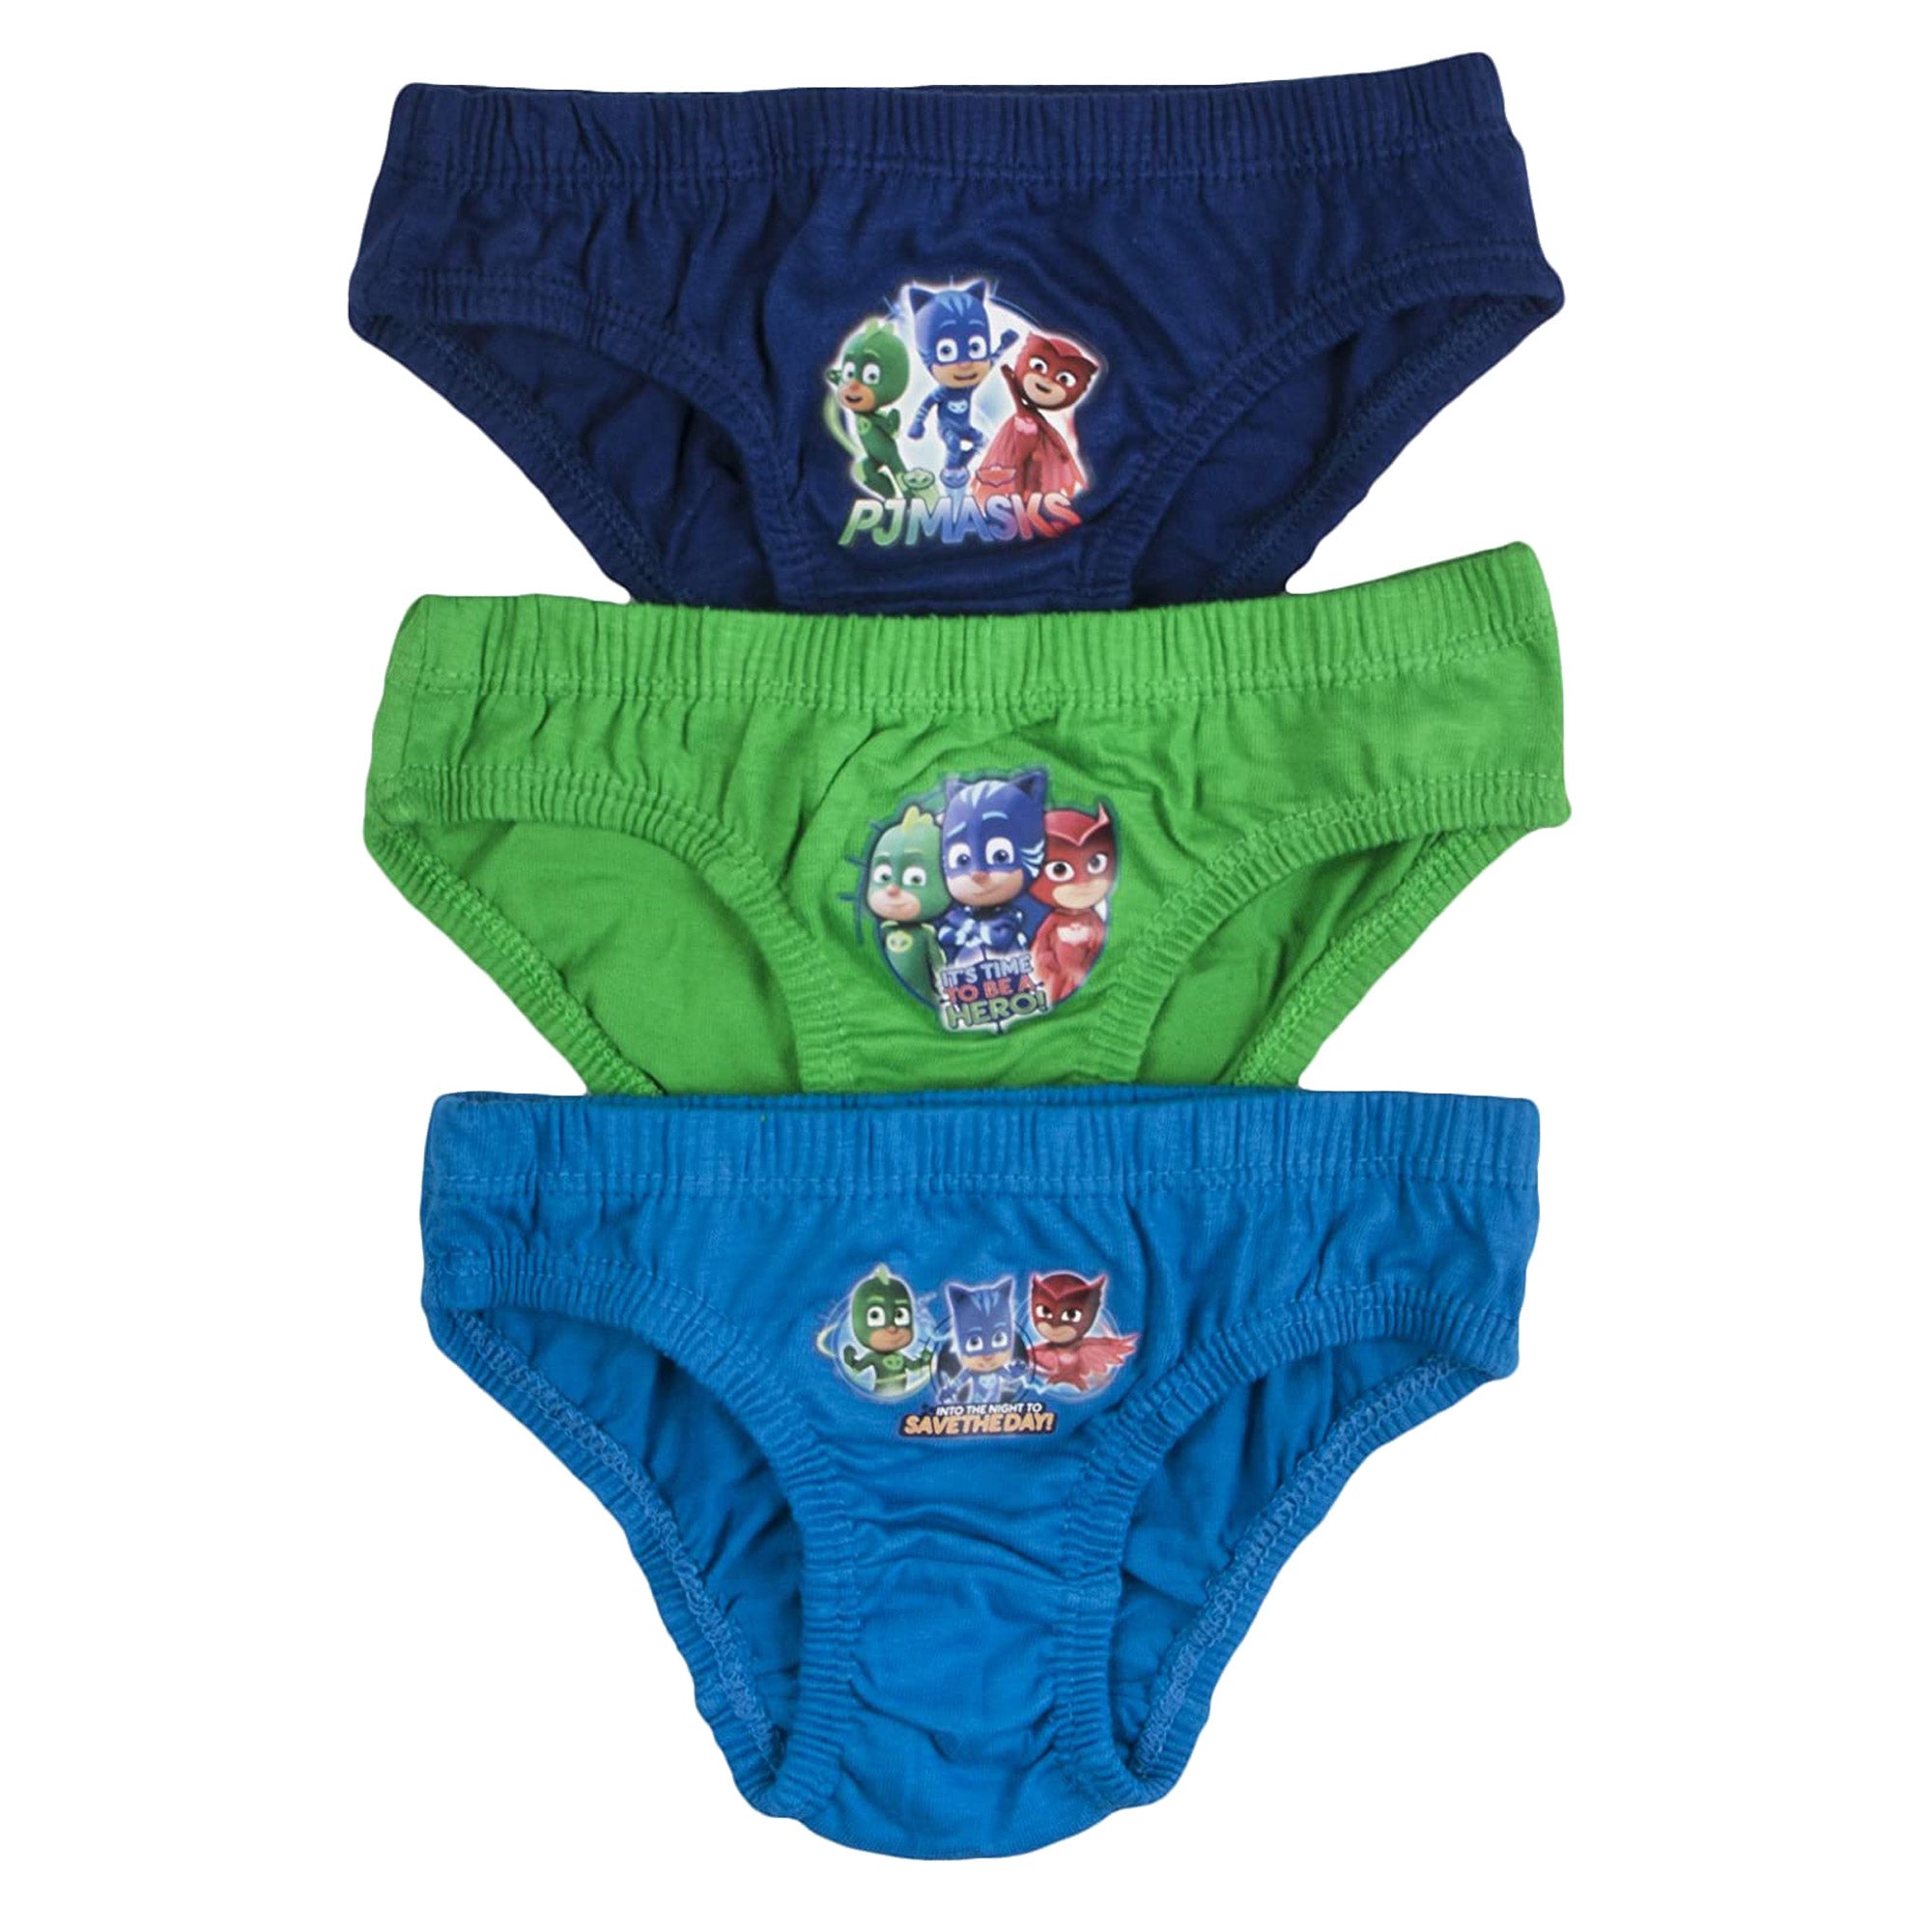 PJ Masks Kids Underwear Briefs Pants Green 3 Pack 18 month - 5